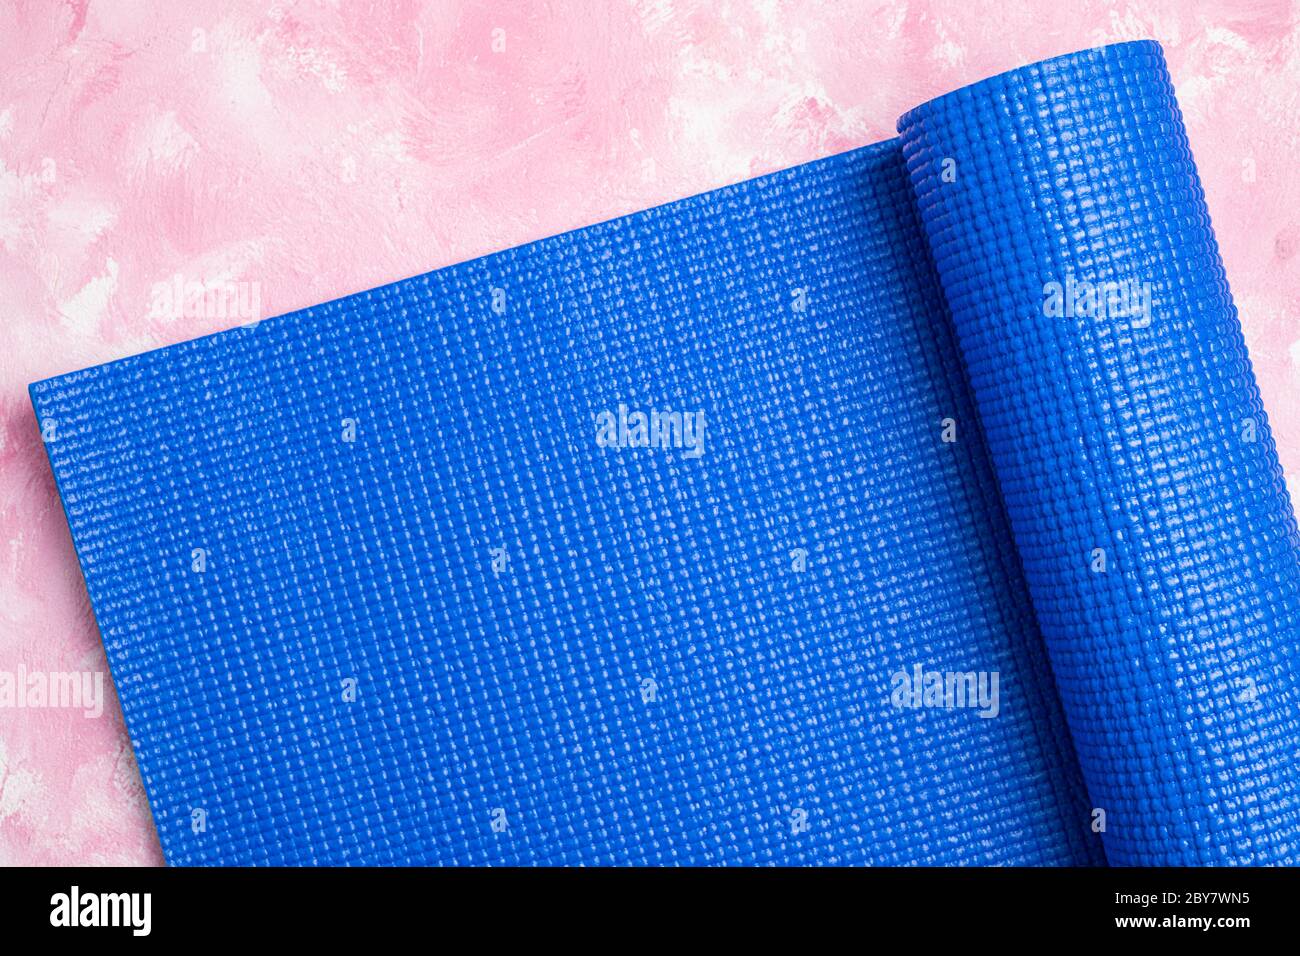 Tappetino blu per yoga su sfondo rosa. Attrezzature per yoga. Concetto stile di vita sano, sport, meditazioni e relax. Vista dall'alto, spazio di copia Foto Stock